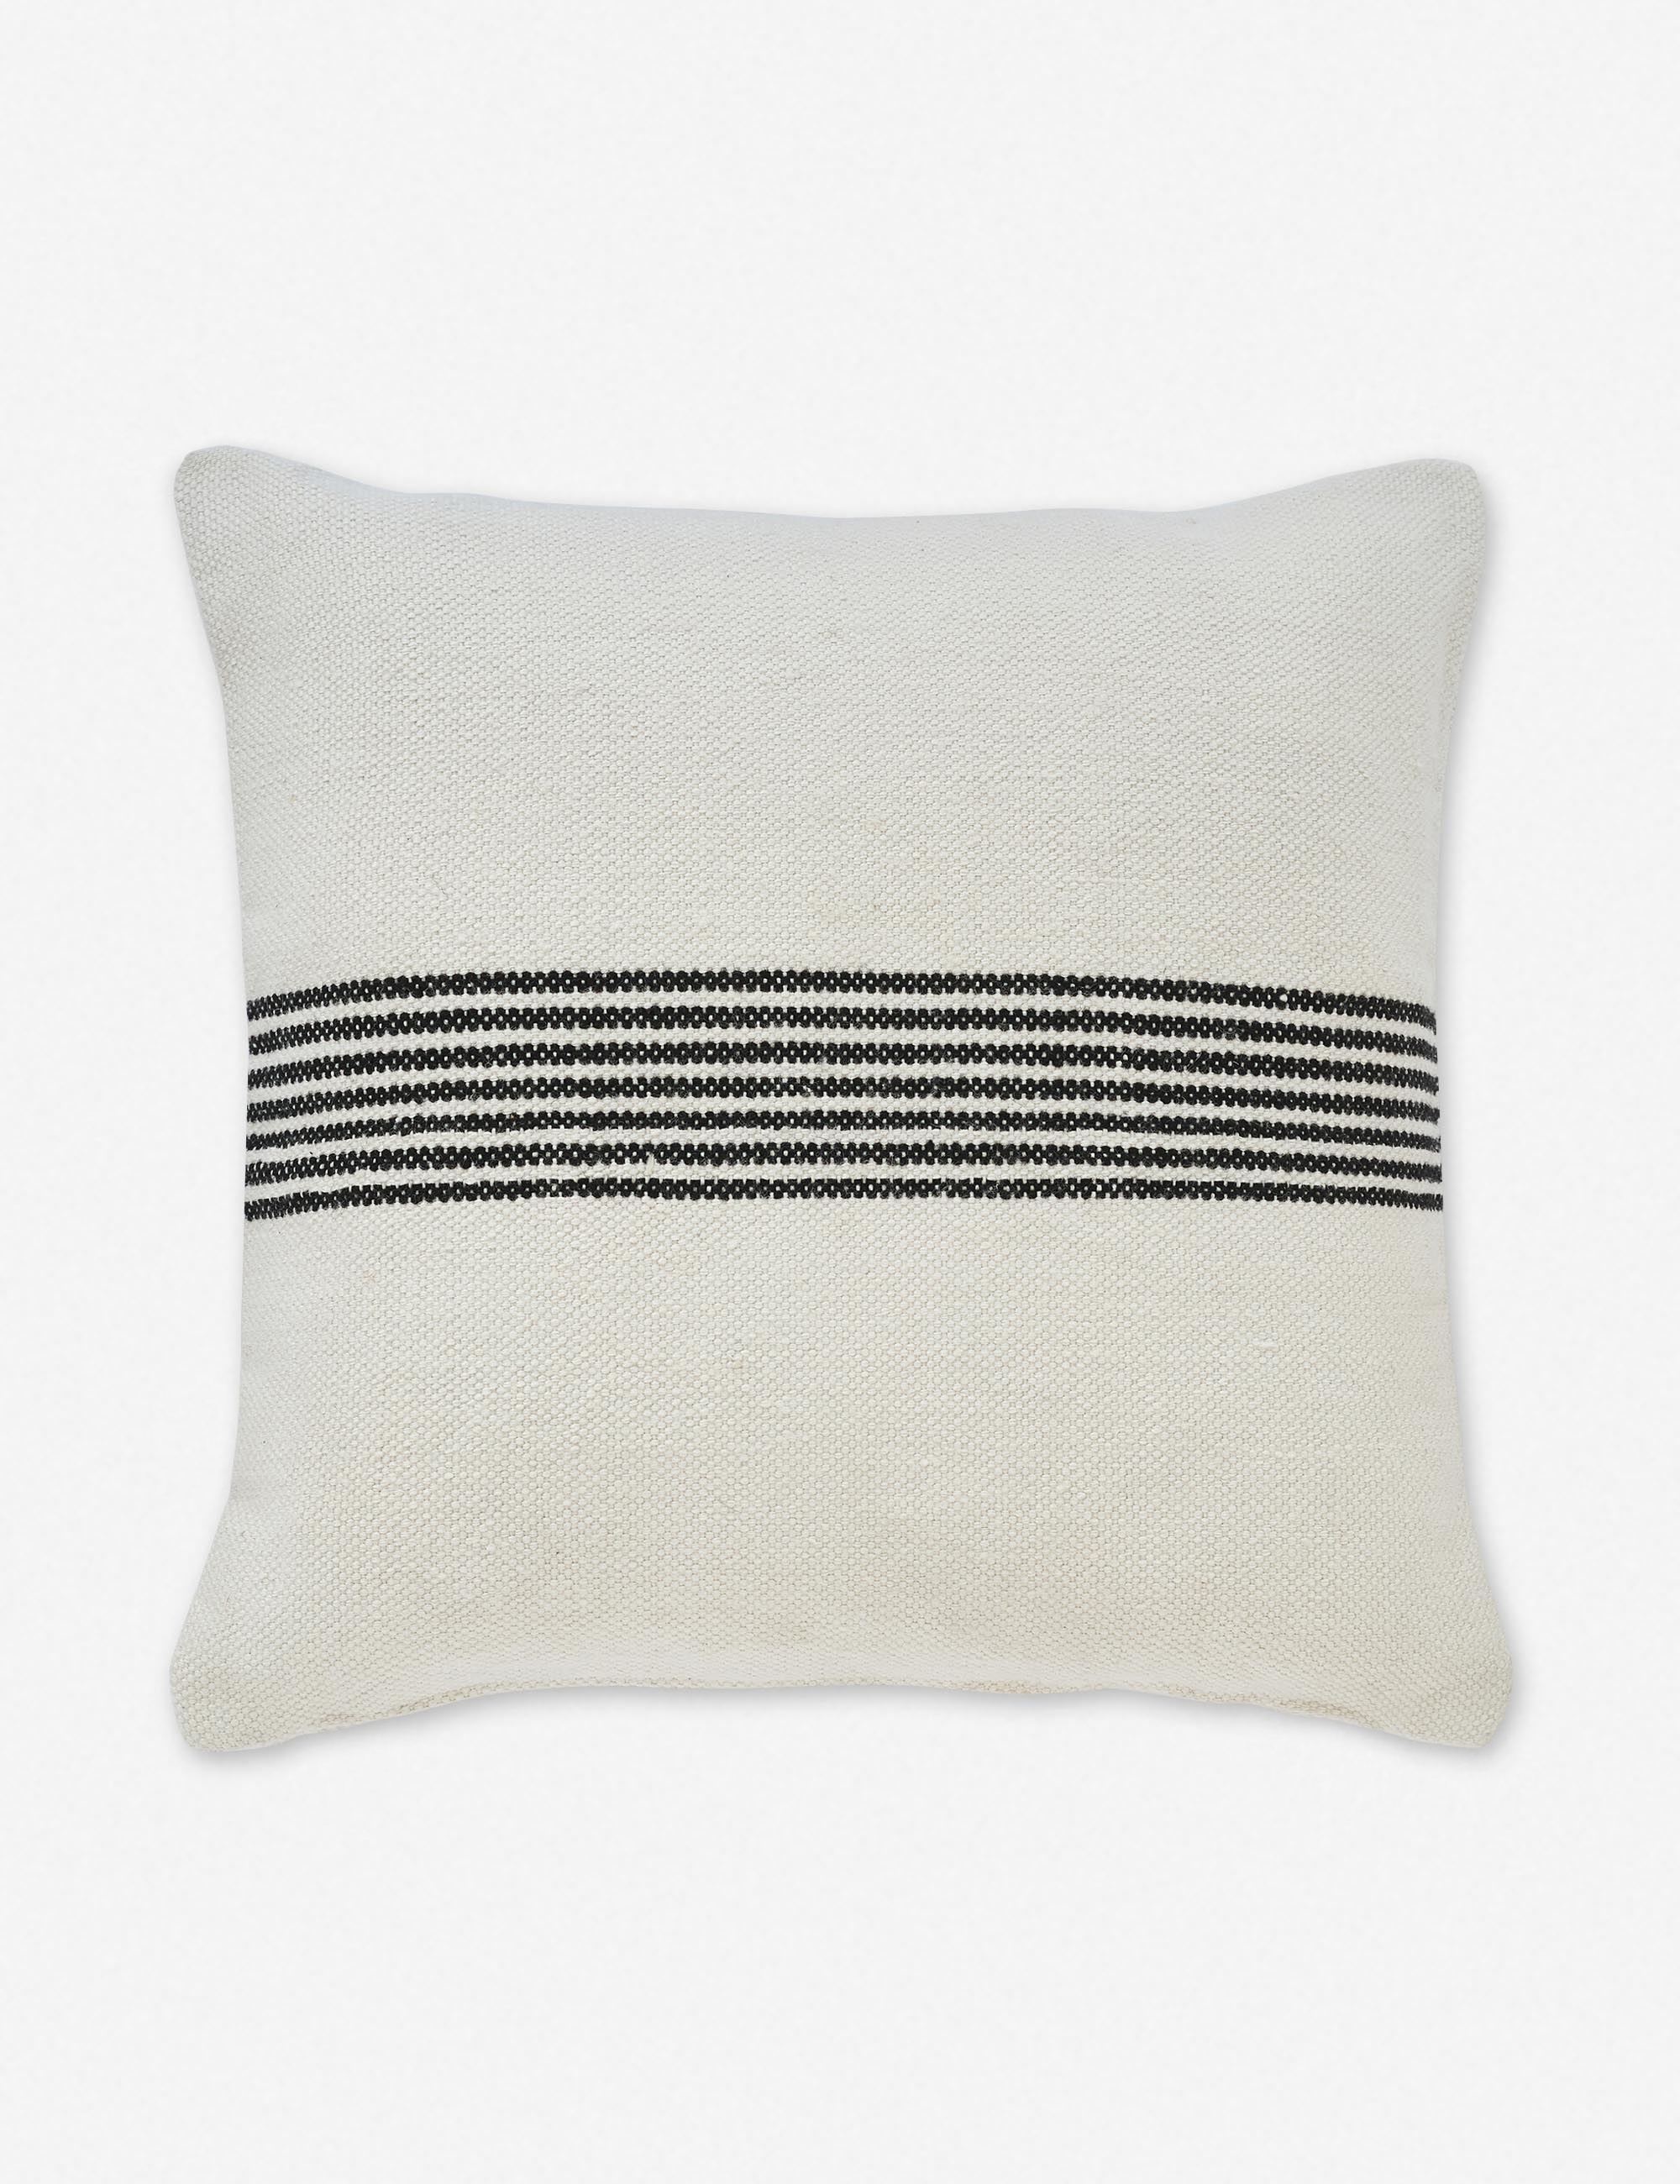 Katya Indoor/Outdoor Pillow, Black Stripe, 20" x 20" - Image 0